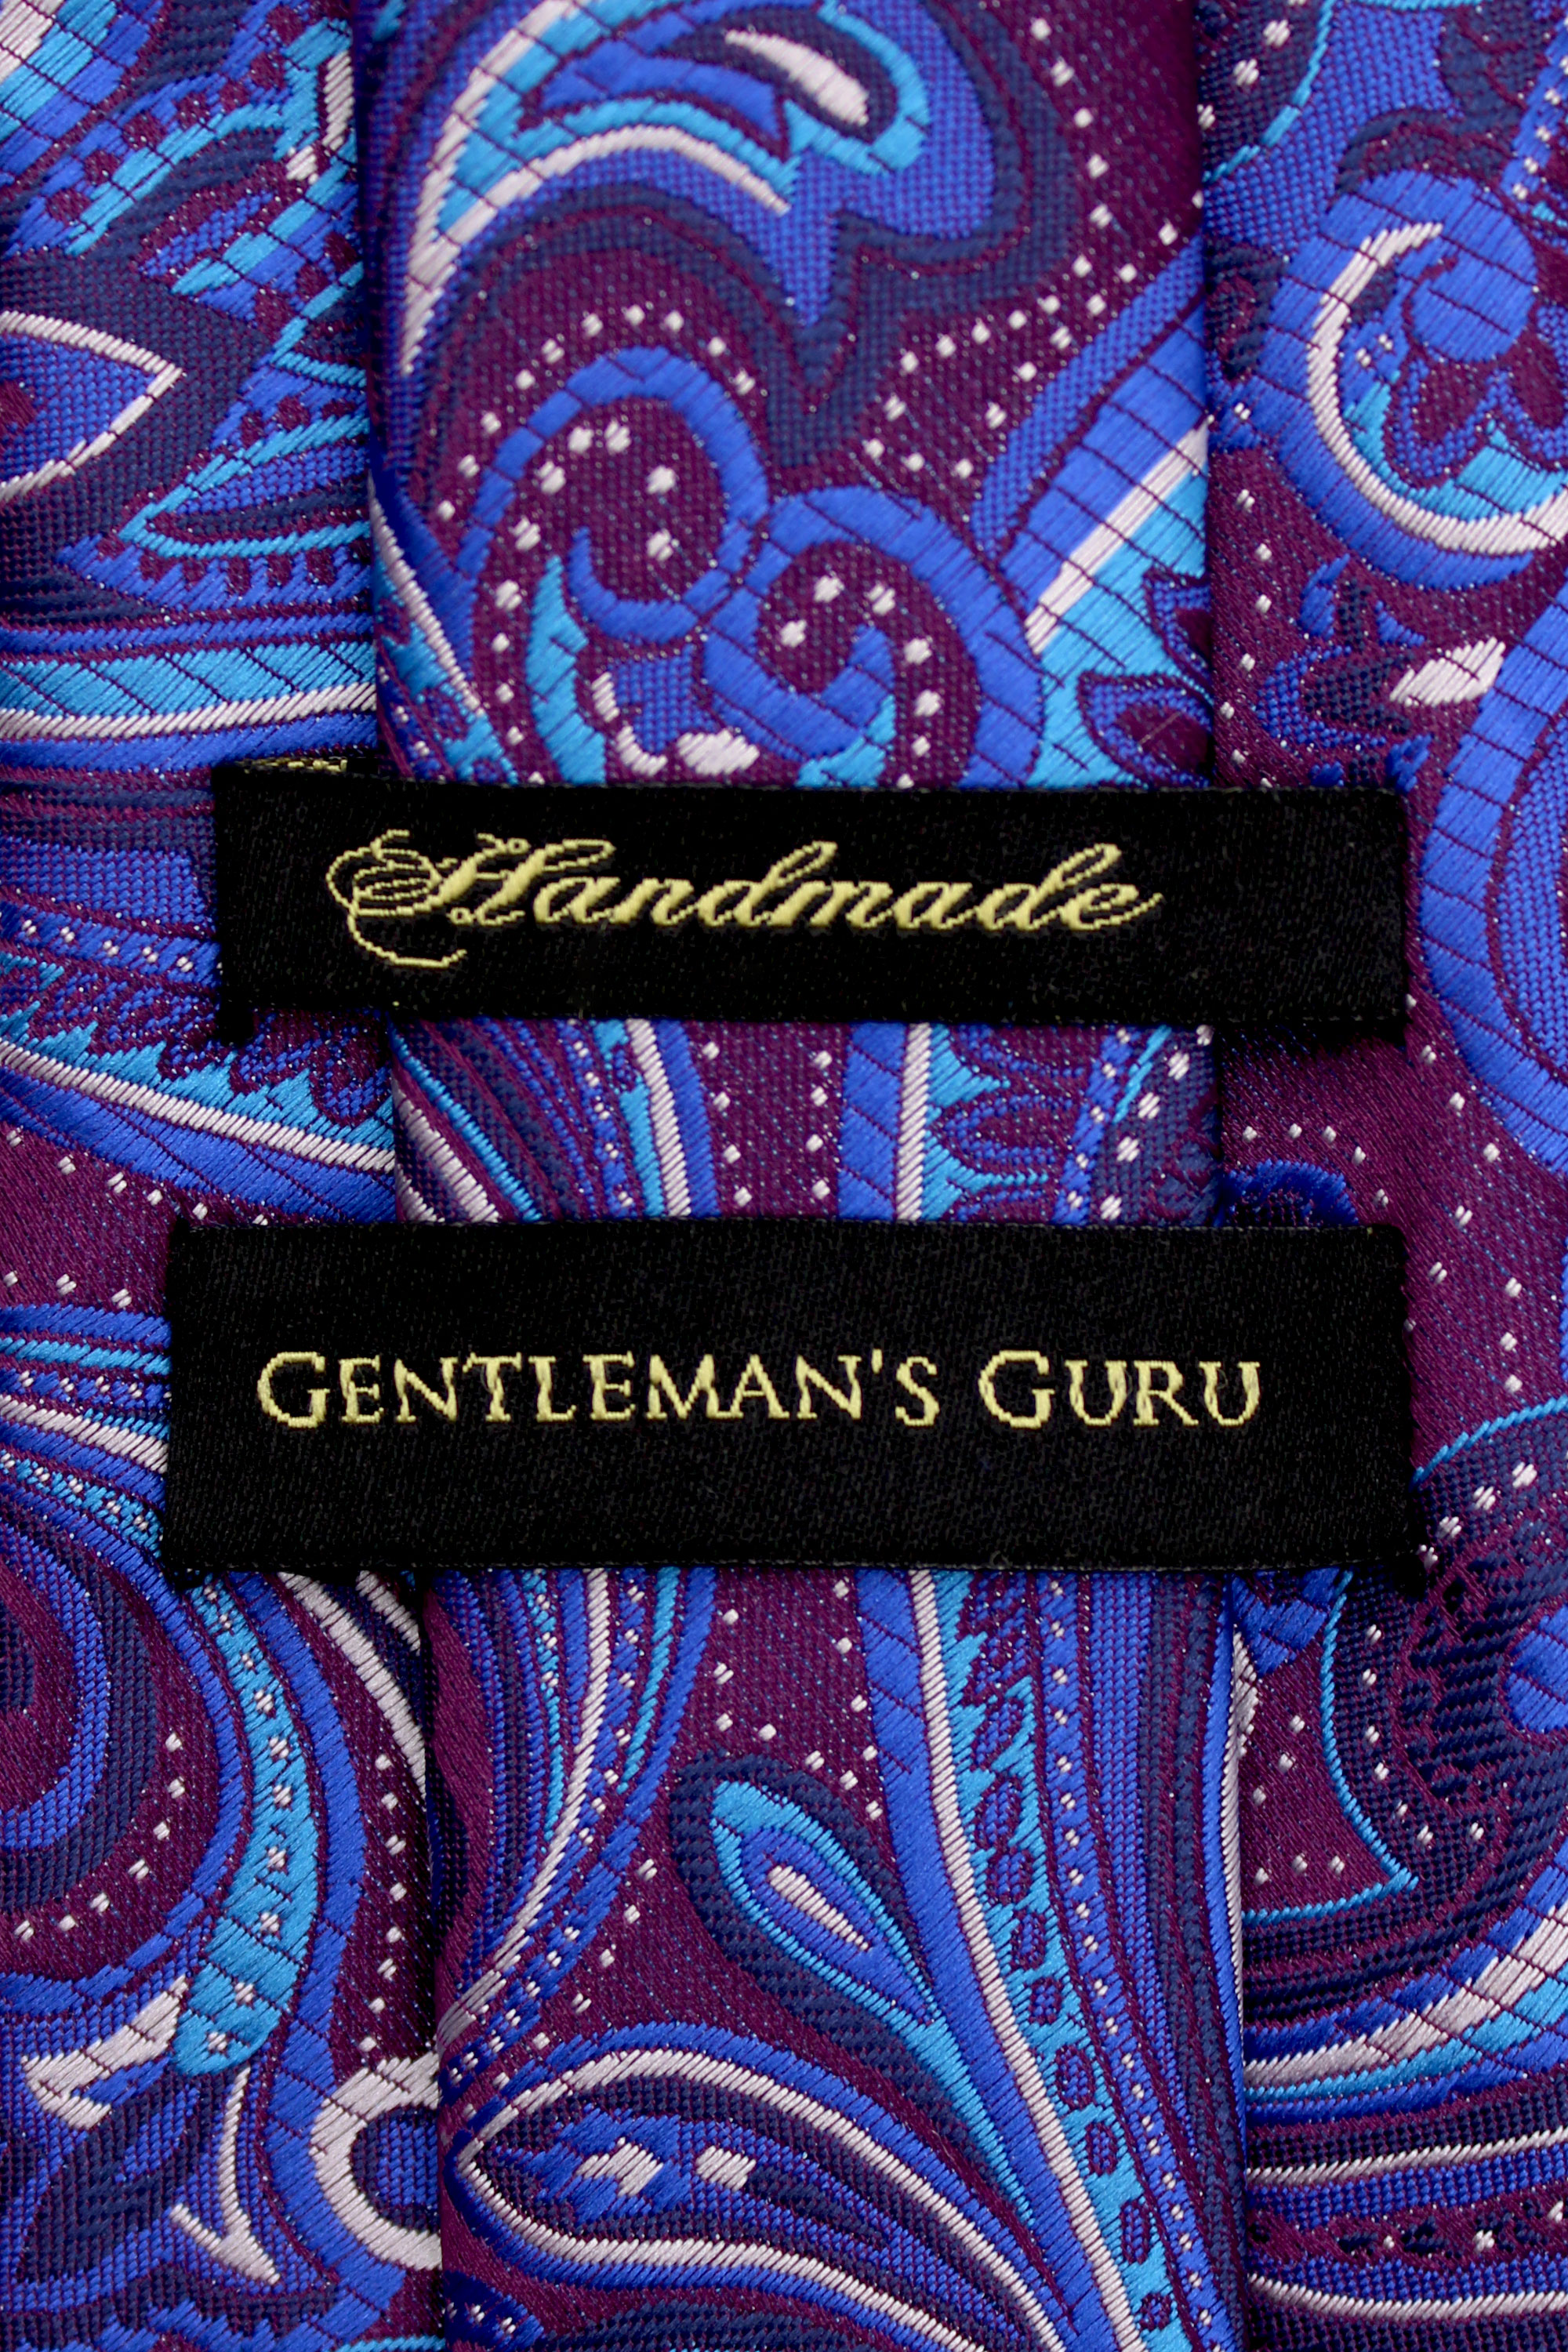 Blue-and-Purple-Tie-Branded-Neckie-Handmade-pasiley-from-Gentlemansguru.com